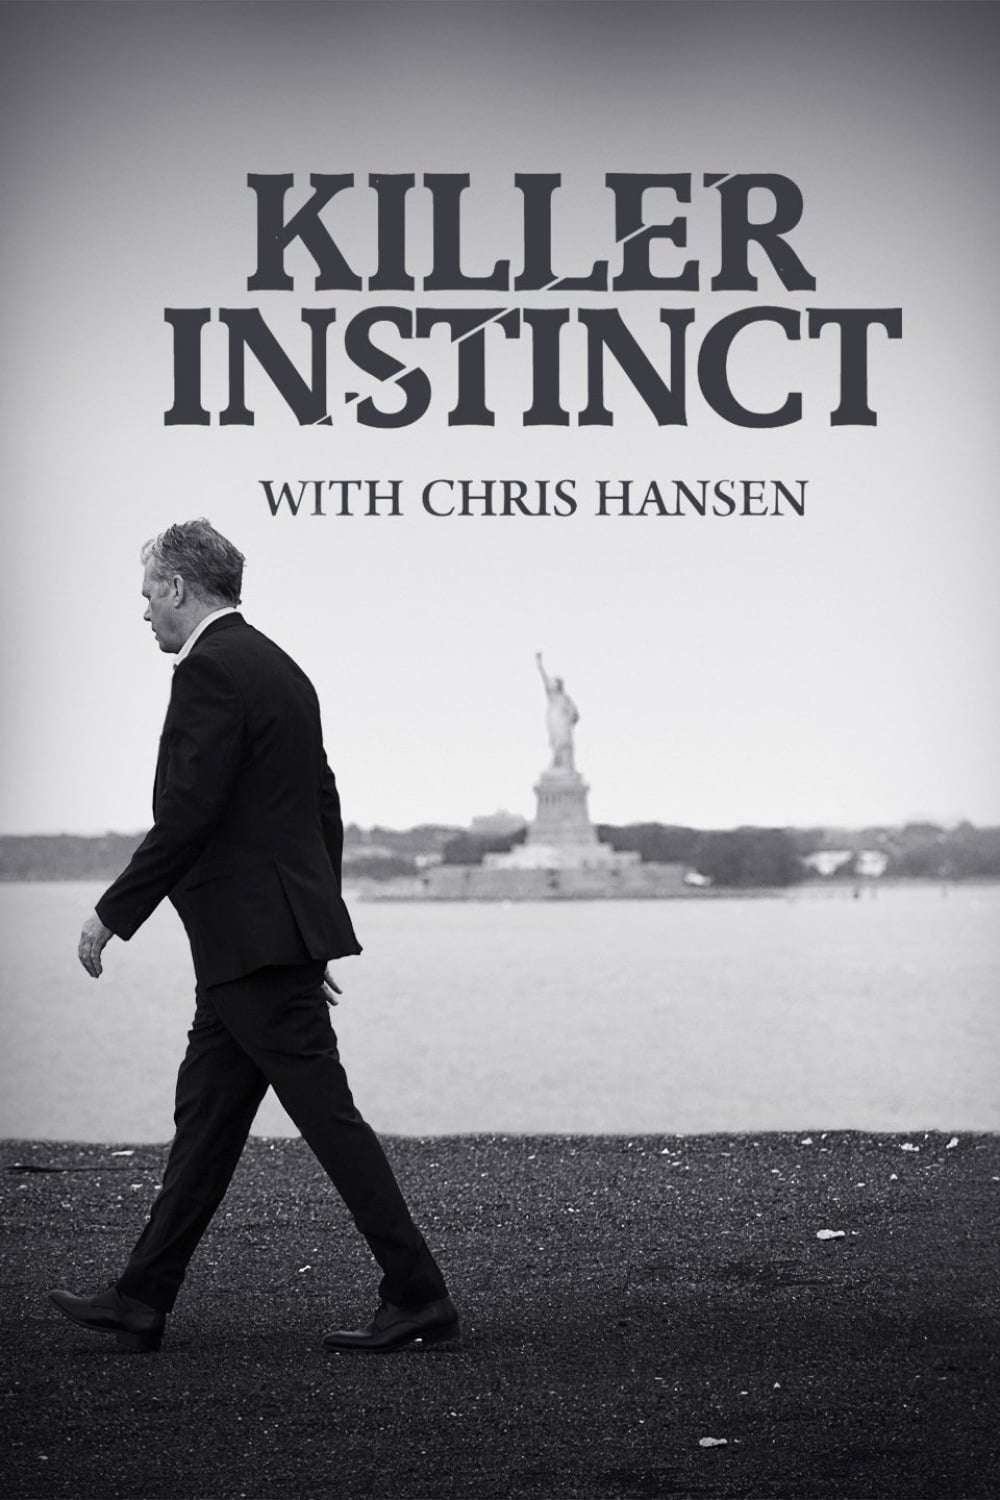 Caratula de KILLER INSTINCT WITH CHRIS HANSEN (Instinto asesino con Chris Hansen) 